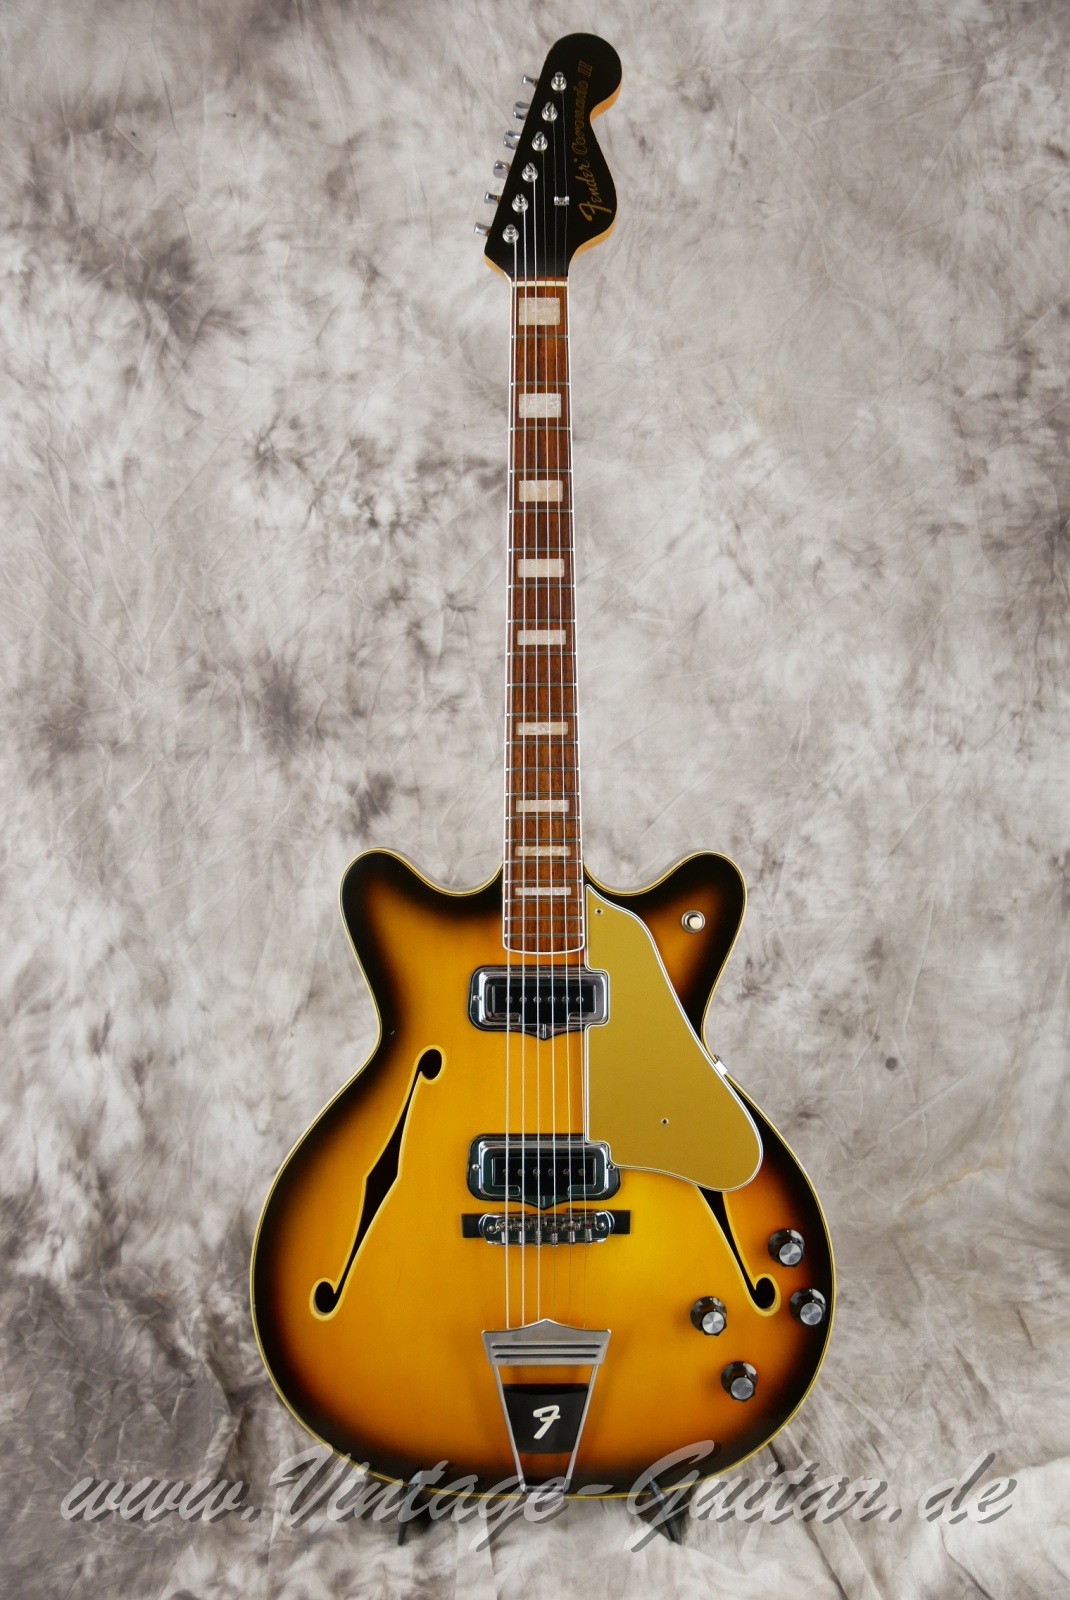 Fender-Coronado-II-1966-USA-sunburst-001.jpg